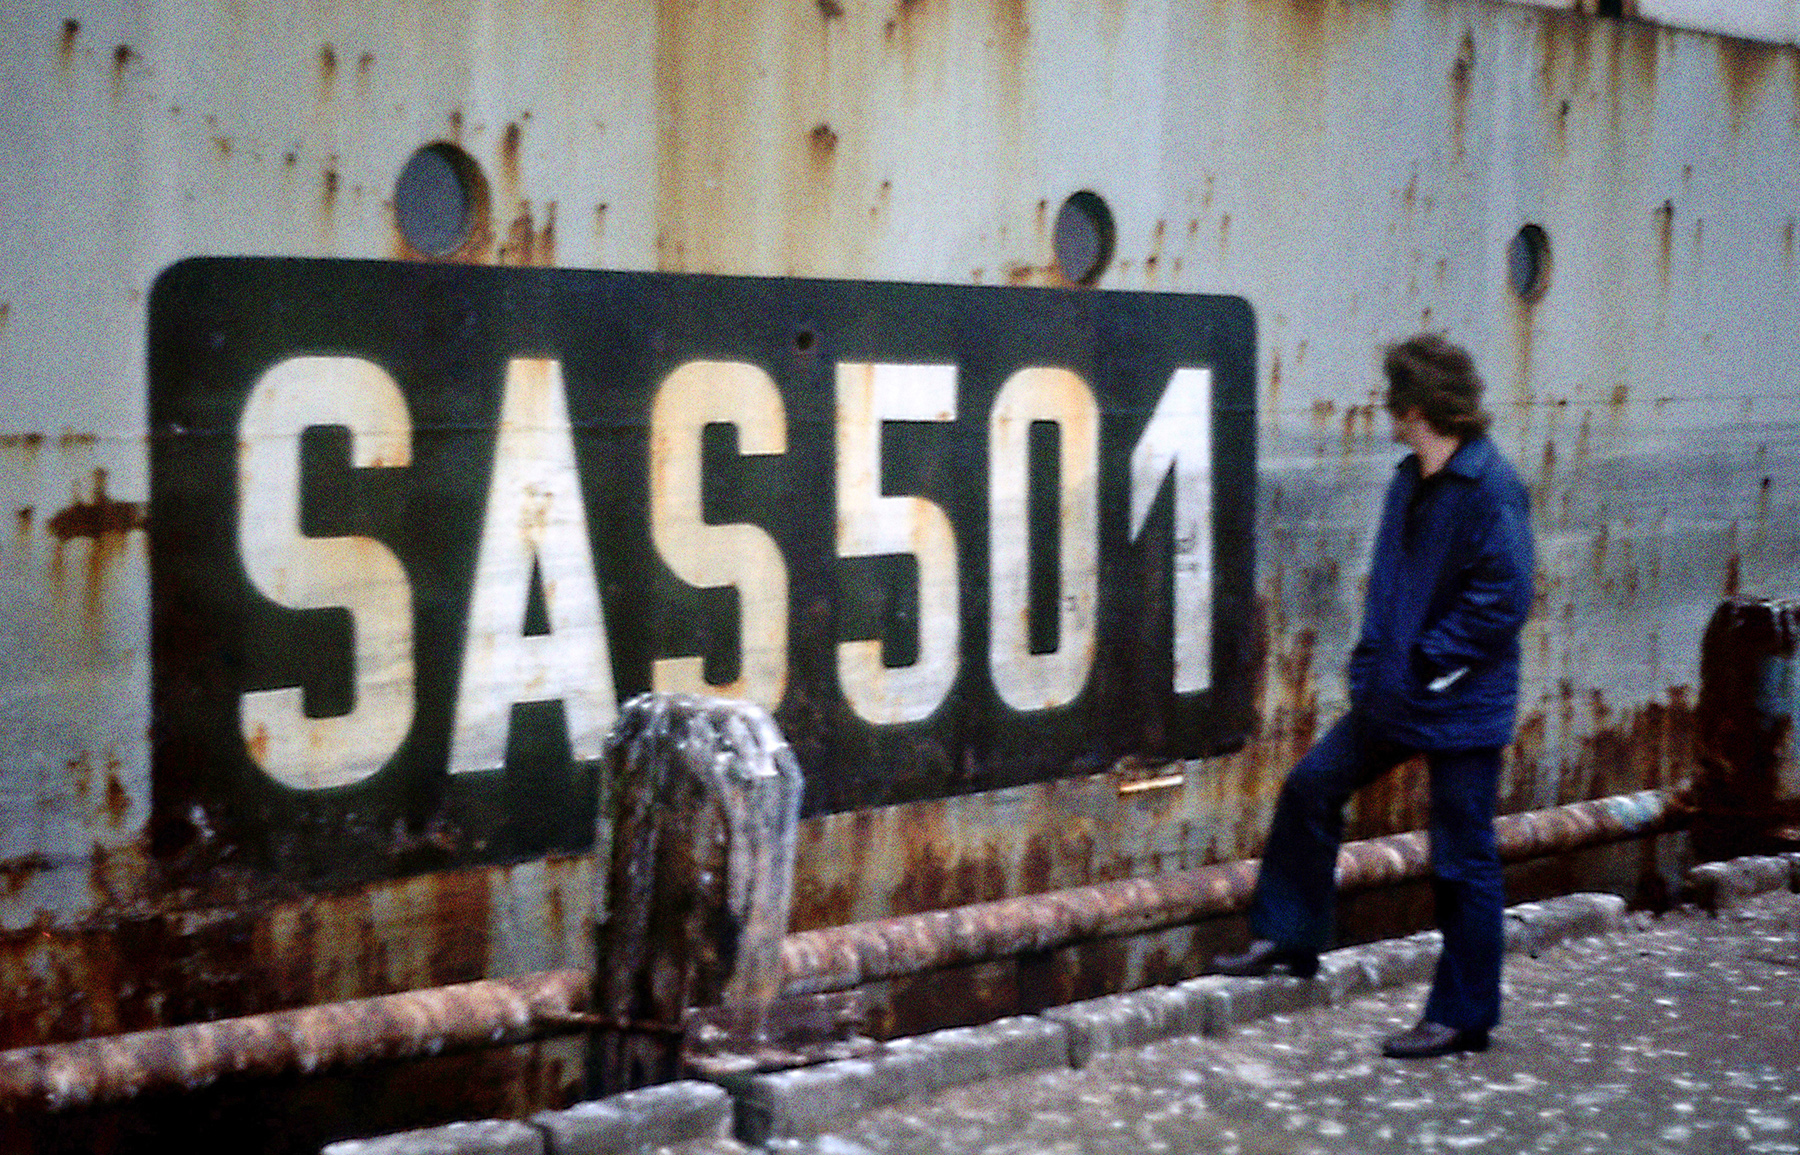 Schiffskennung "SAS 501" auf der Außenseite des Schiffes. Ein Mann steht davor.